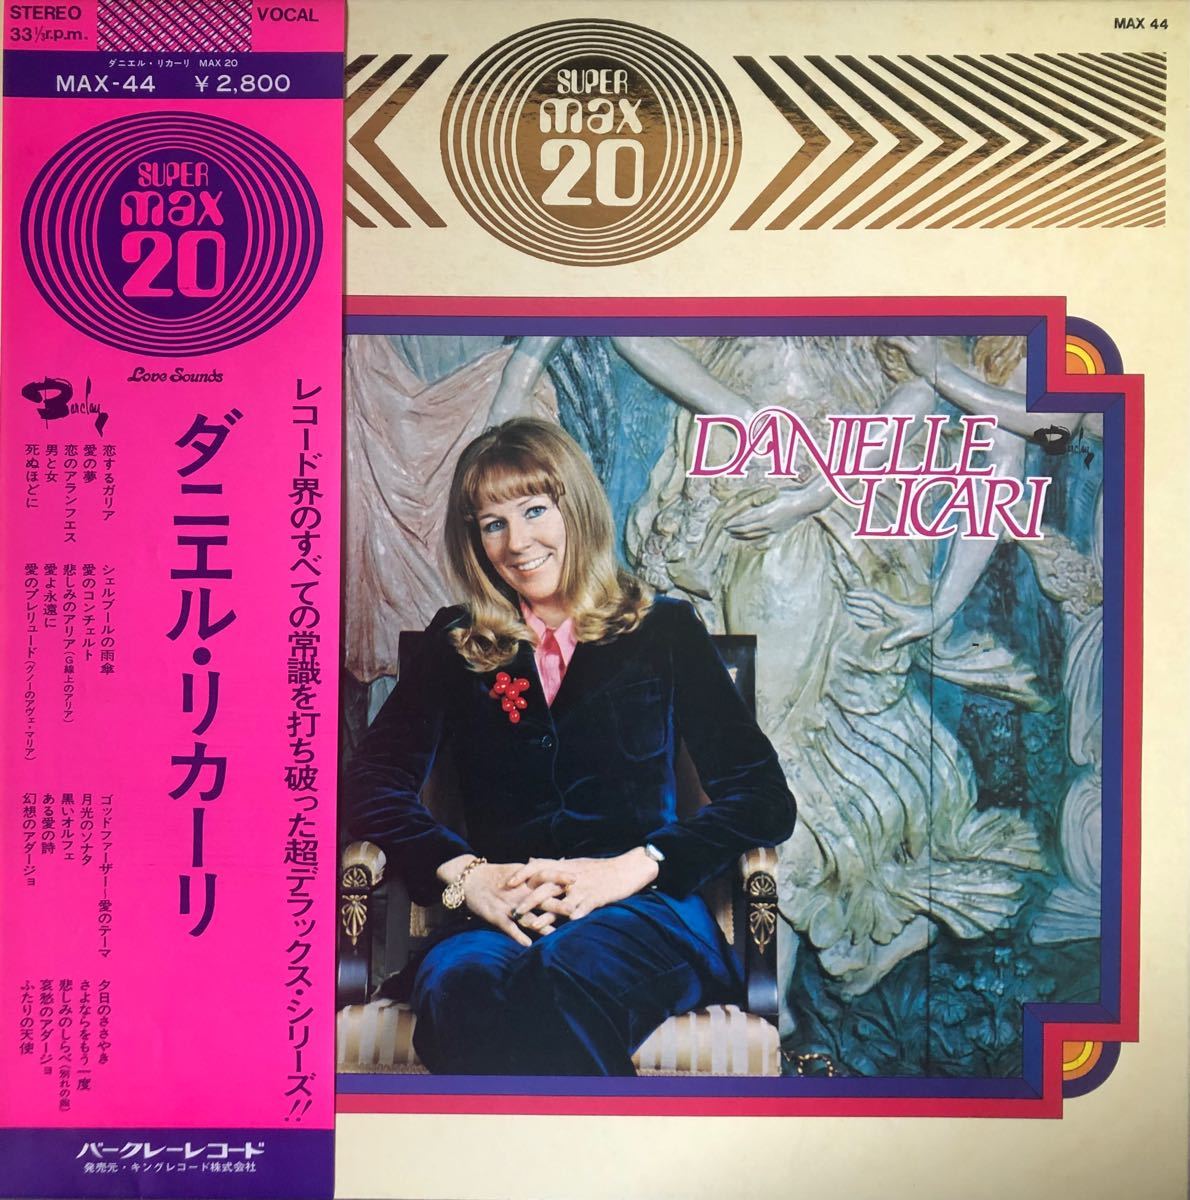 【おまとめ割引あり】ダニエル・リカーリ「ダニエル・リカーリ MAX20」 LPレコード